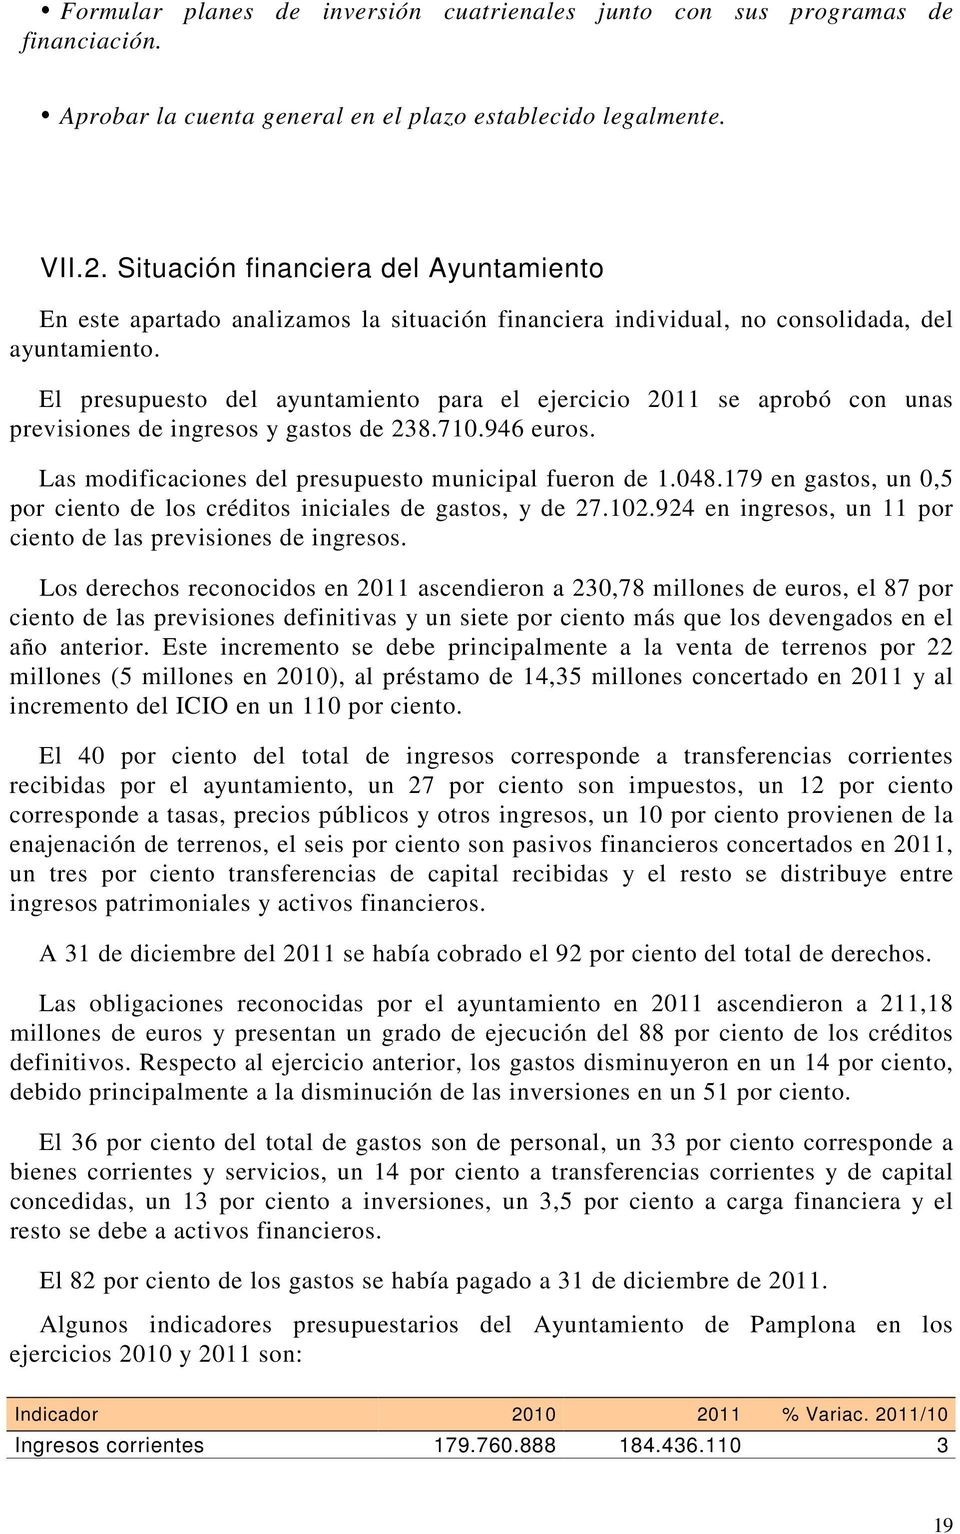 El presupuesto del ayuntamiento para el ejercicio 2011 se aprobó con unas previsiones de ingresos y gastos de 238.710.946 euros. Las modificaciones del presupuesto municipal fueron de 1.048.